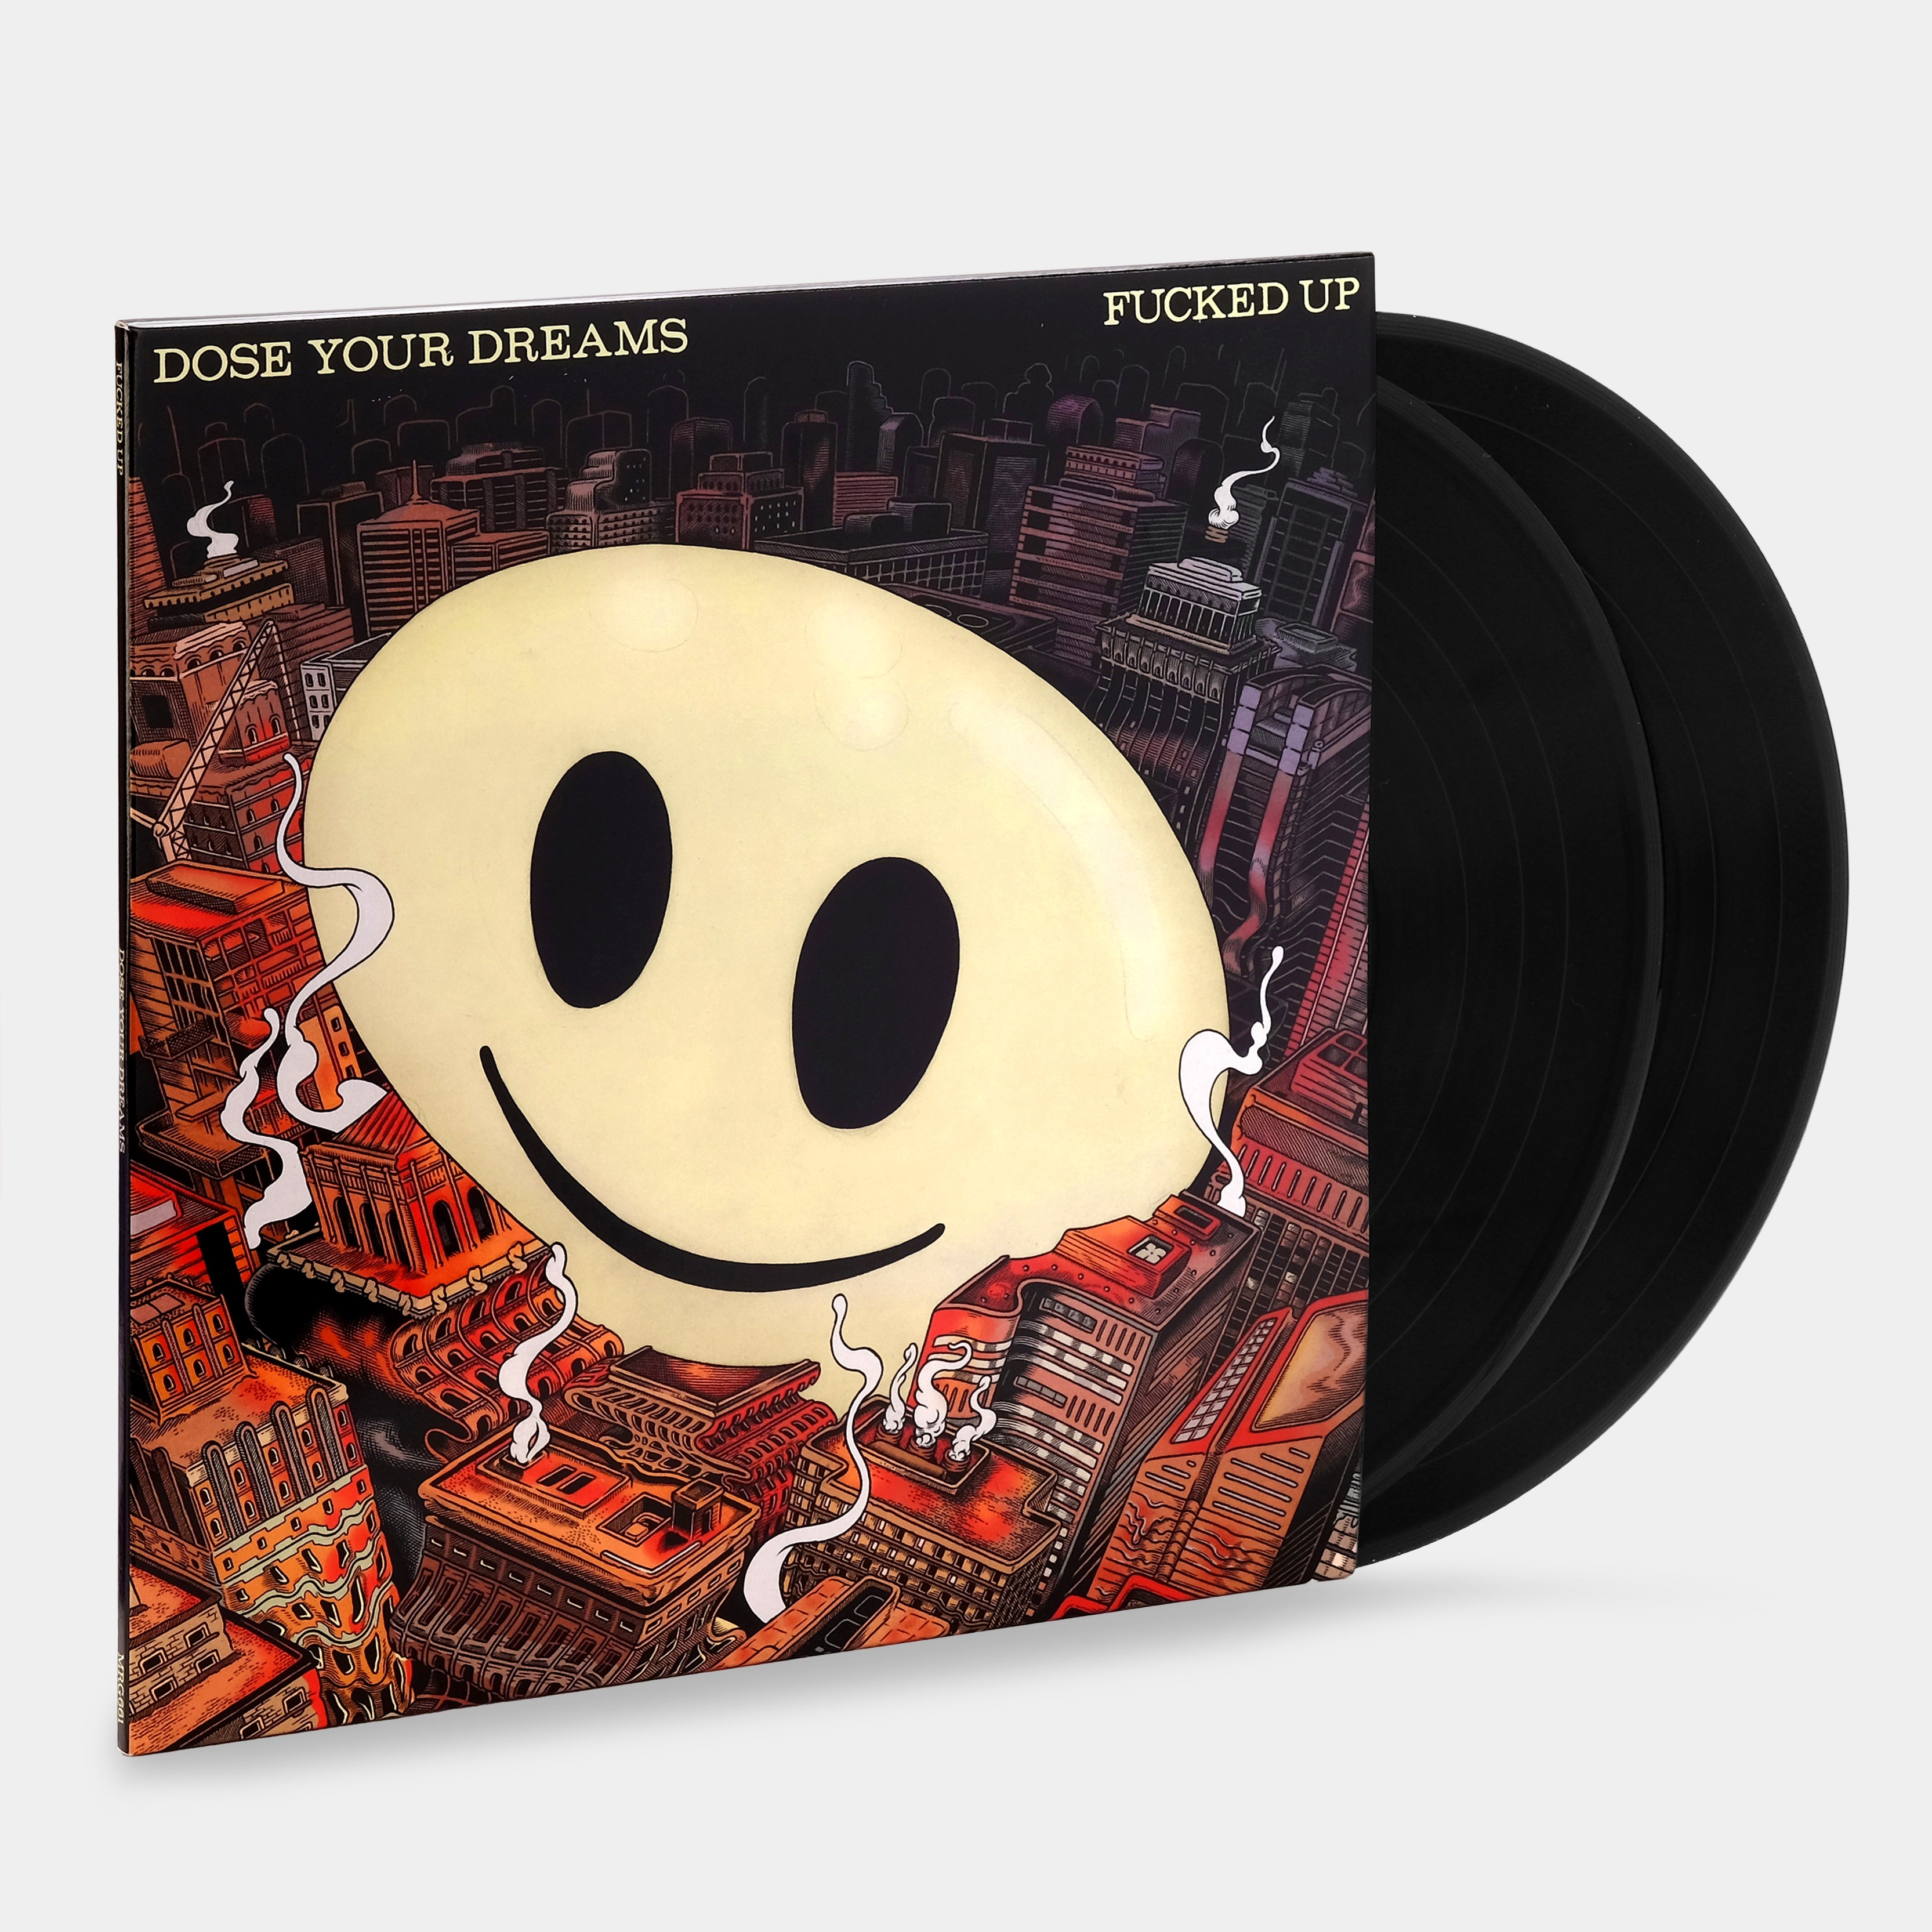 Fucked Up - Dose Your Dreams 2xLP Vinyl Record